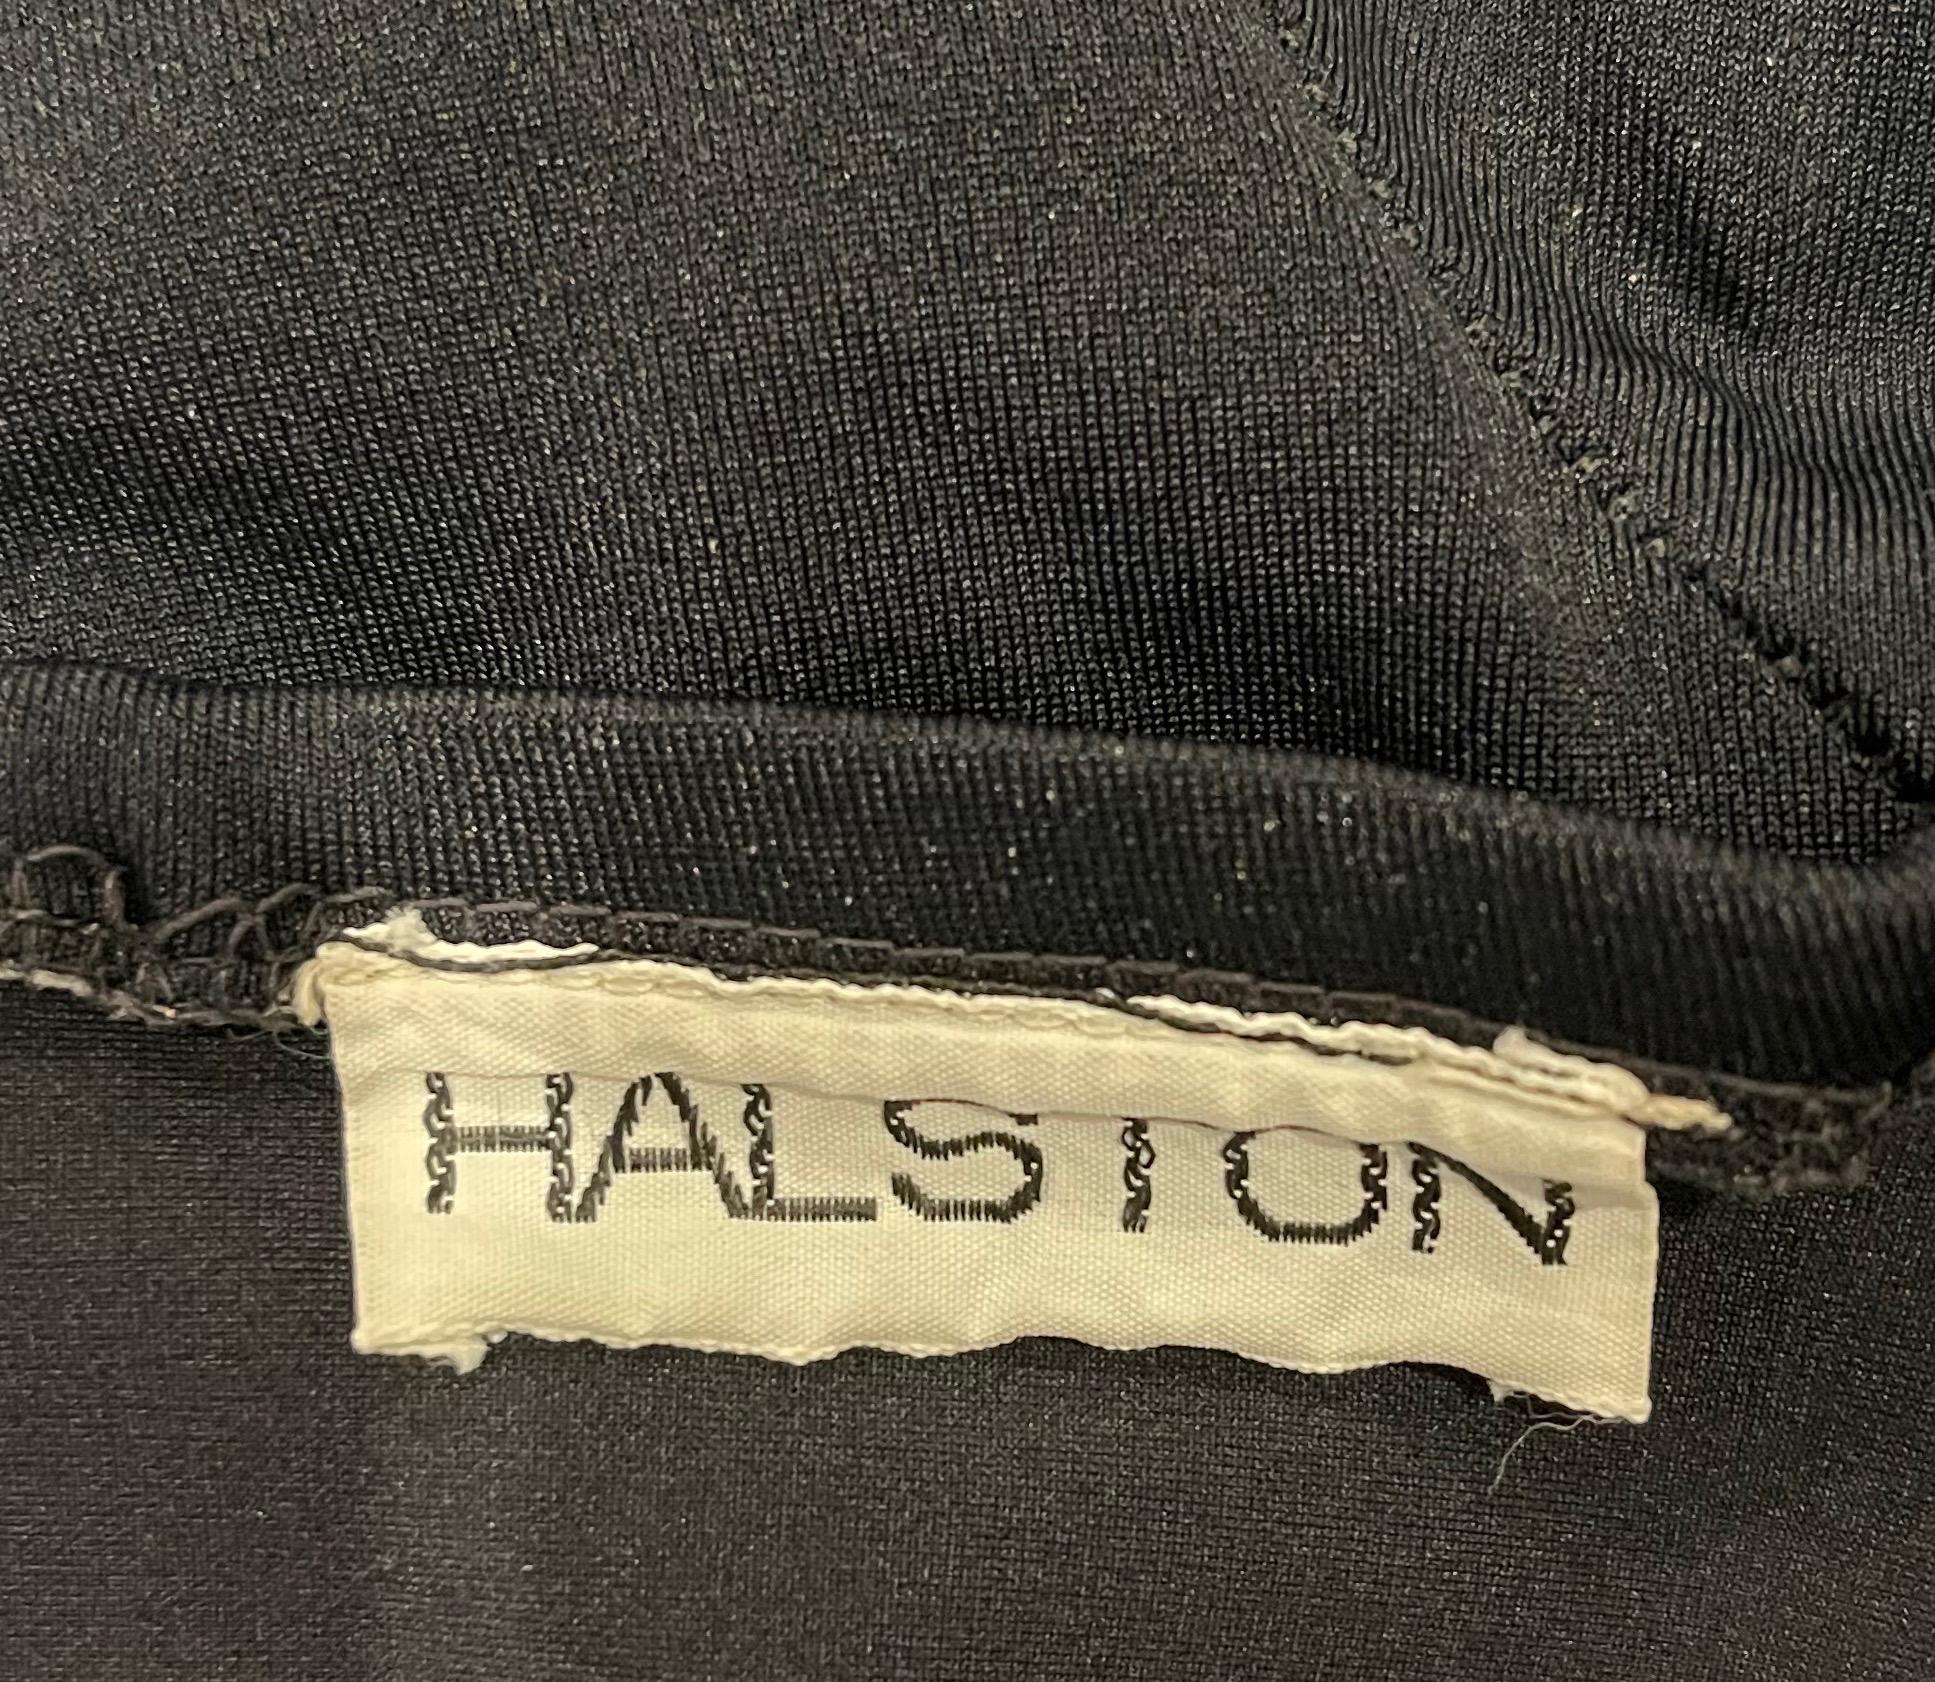 Seltenes Museumsstück ! Dieser schwarze trägerlose Badeanzug von HALSTON aus den 1970er Jahren stammt von einem originalen Halstonette-Modell, das ihn für ein Fotoshooting in den 70er Jahren trug. Aufwändige Nähte, die dem Körper schmeicheln.